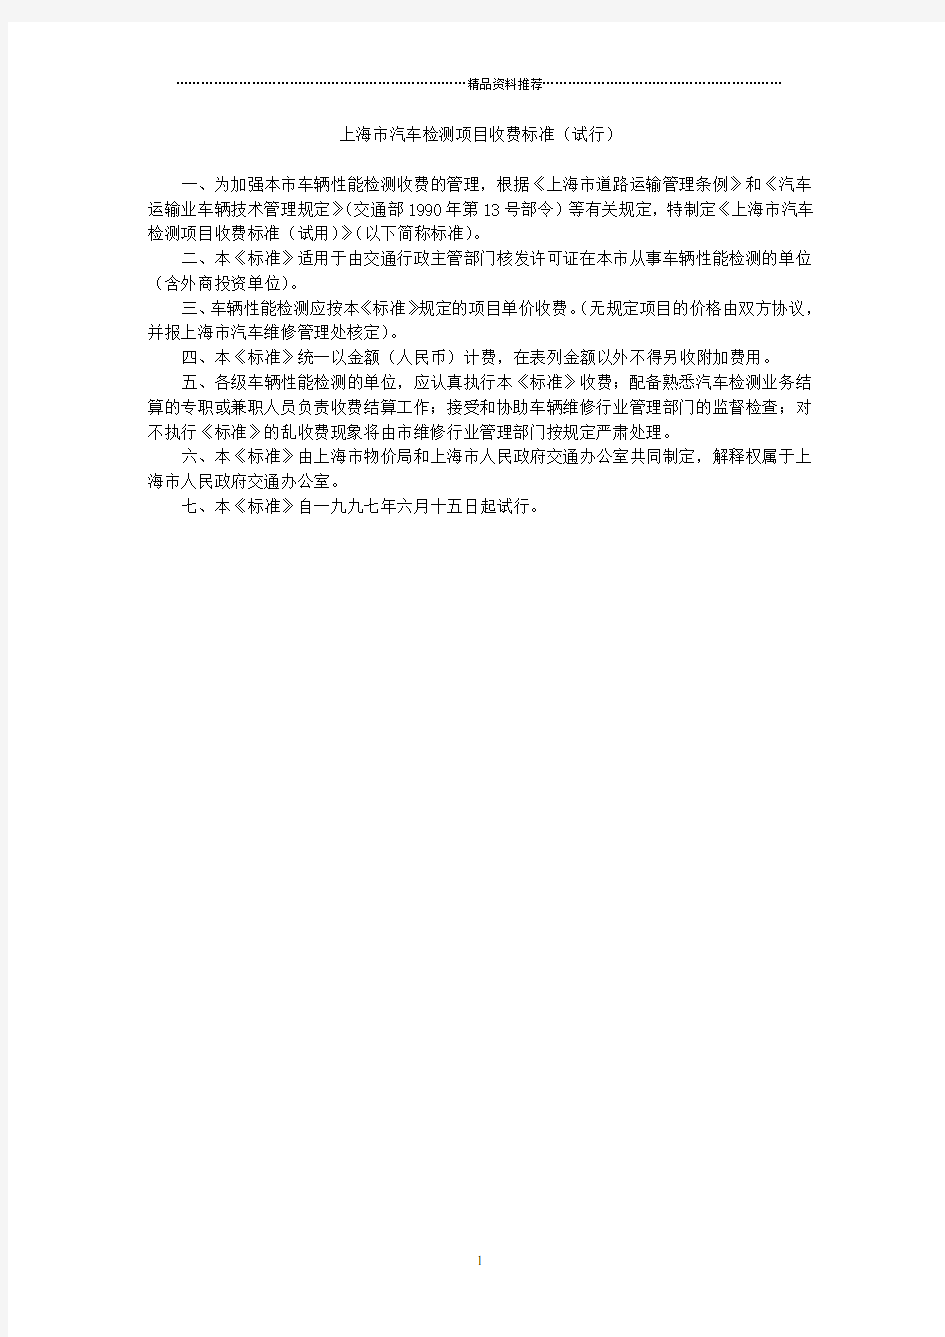 上海市汽车检测项目收费标准(试行)